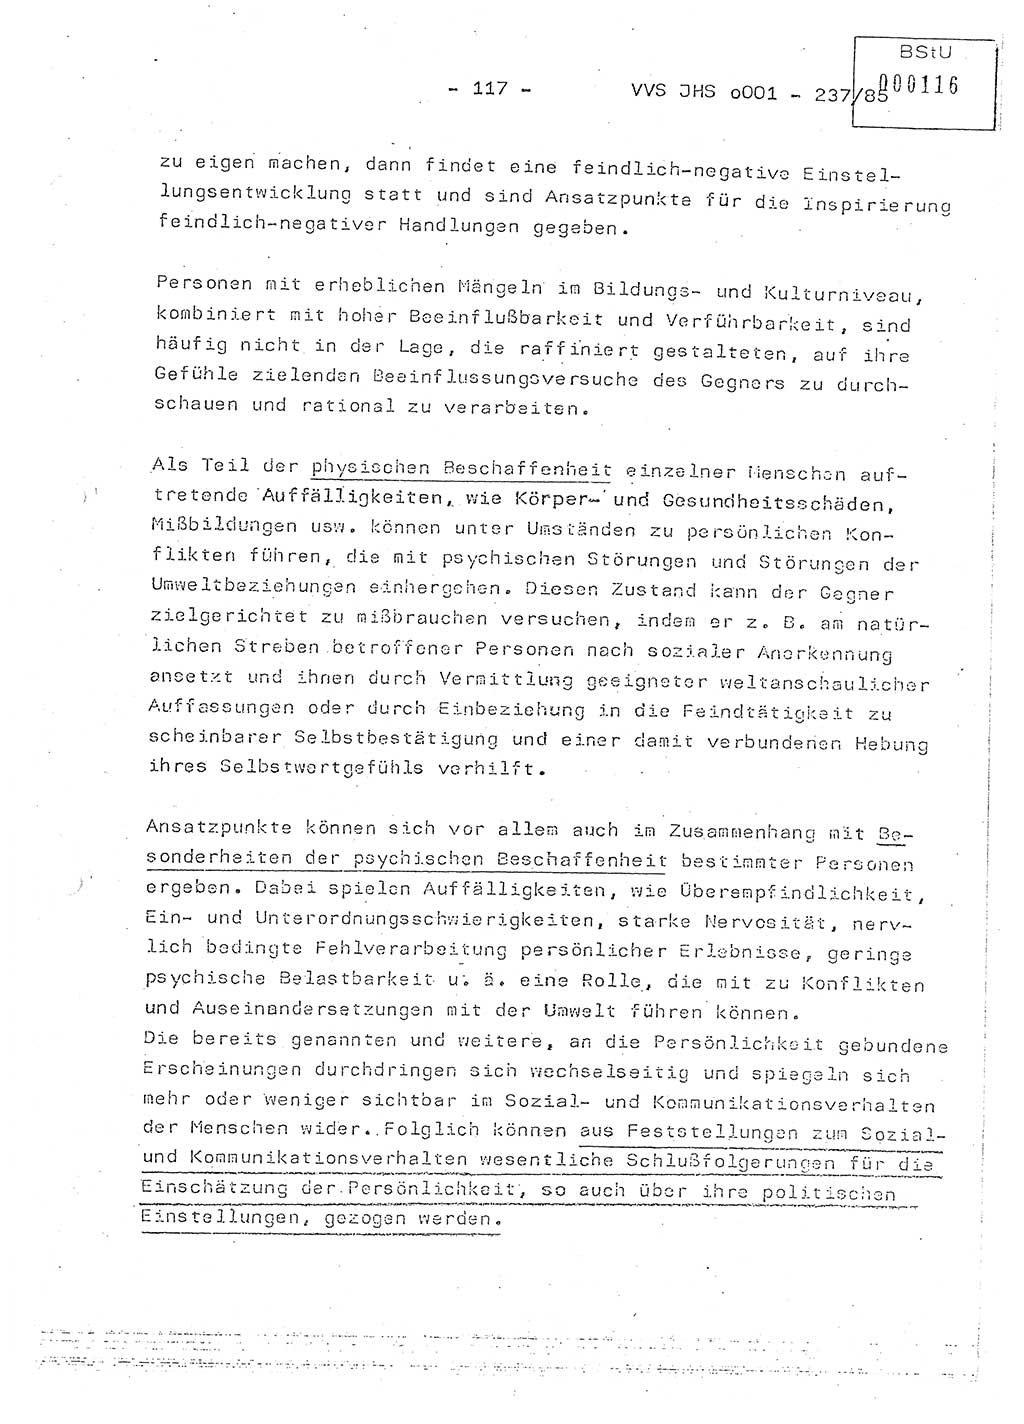 Dissertation Oberstleutnant Peter Jakulski (JHS), Oberstleutnat Christian Rudolph (HA Ⅸ), Major Horst Böttger (ZMD), Major Wolfgang Grüneberg (JHS), Major Albert Meutsch (JHS), Ministerium für Staatssicherheit (MfS) [Deutsche Demokratische Republik (DDR)], Juristische Hochschule (JHS), Vertrauliche Verschlußsache (VVS) o001-237/85, Potsdam 1985, Seite 117 (Diss. MfS DDR JHS VVS o001-237/85 1985, S. 117)